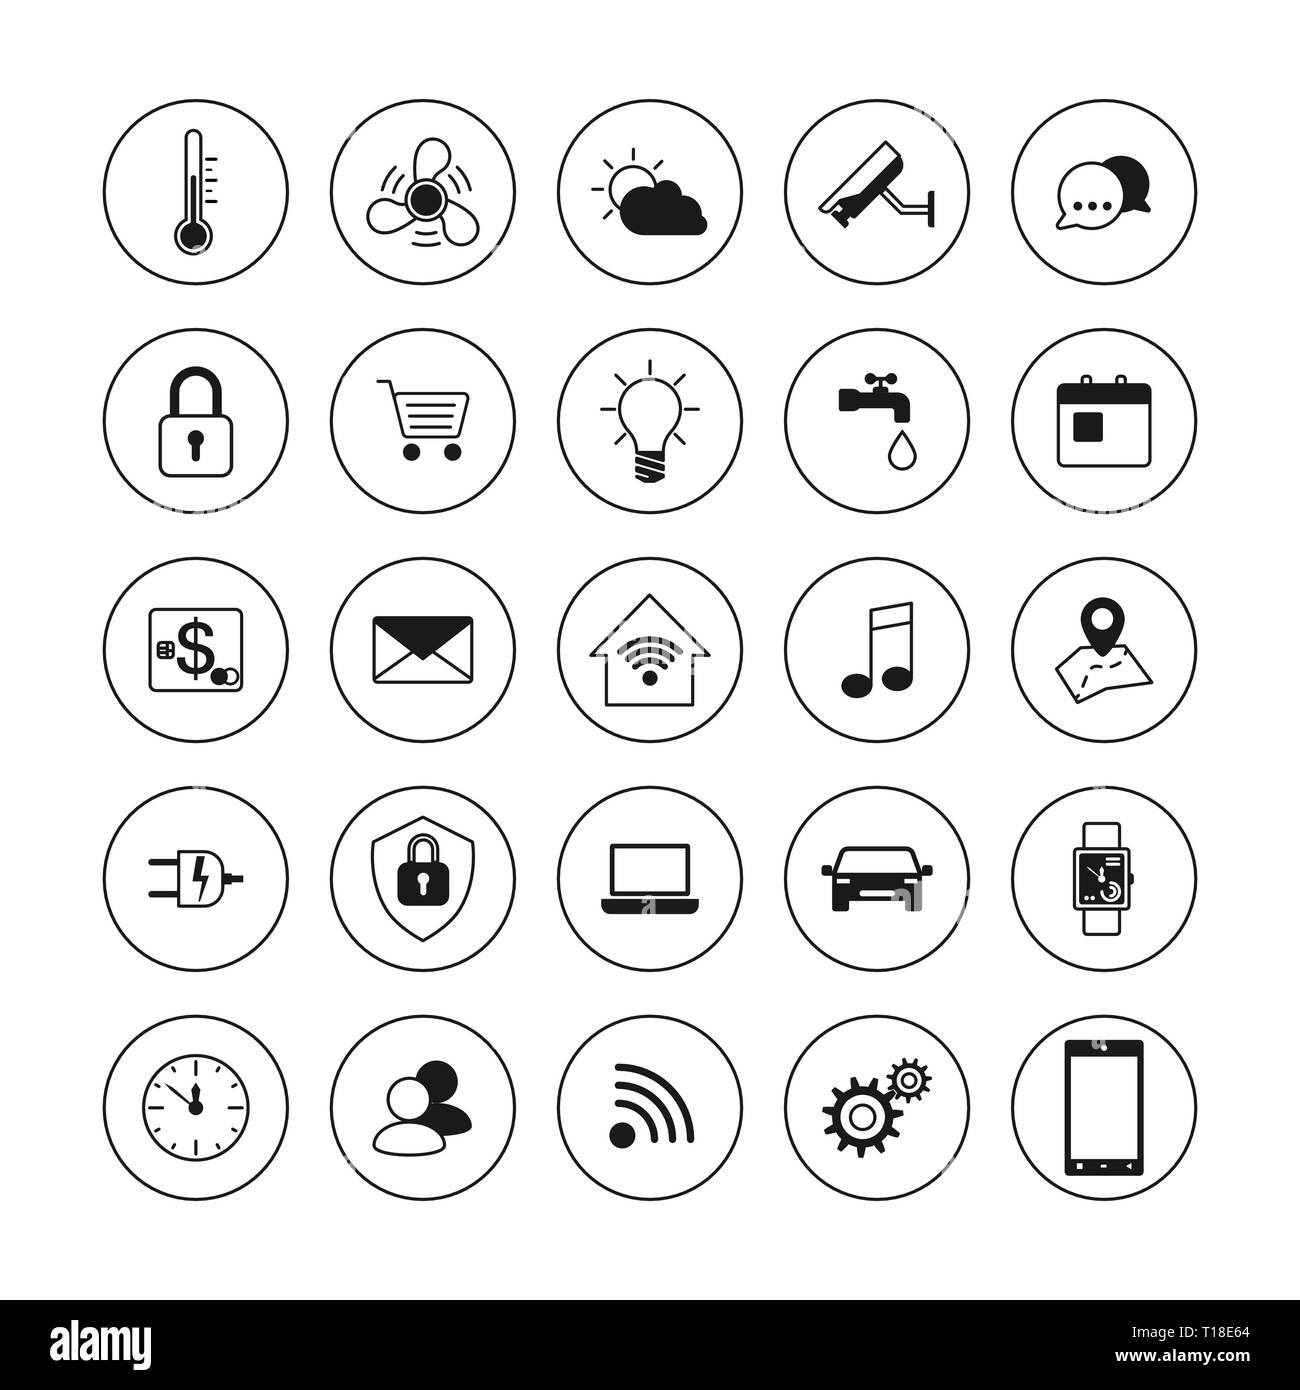 Casa inteligente - Iconos gratis de electrónica